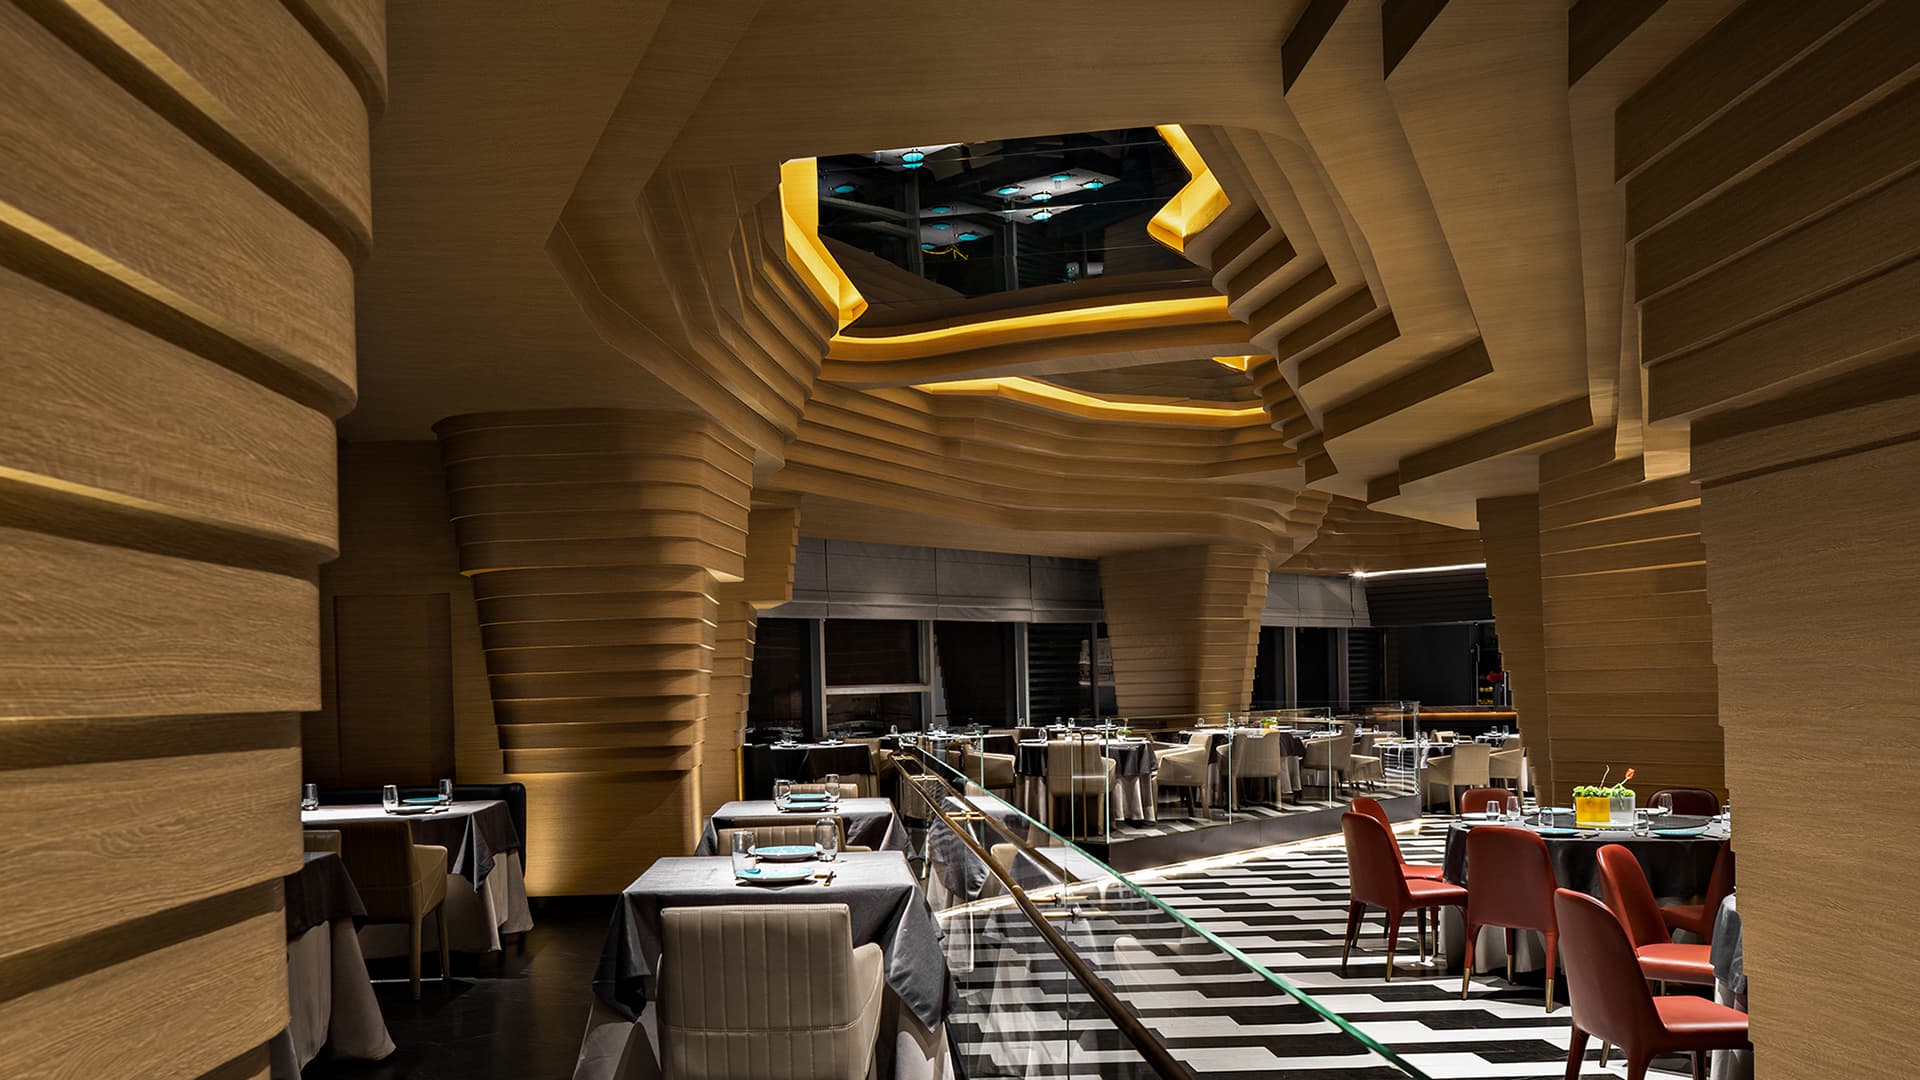 Интерьер китайского ресторана со скульптурным потолком – проект IN.X Design